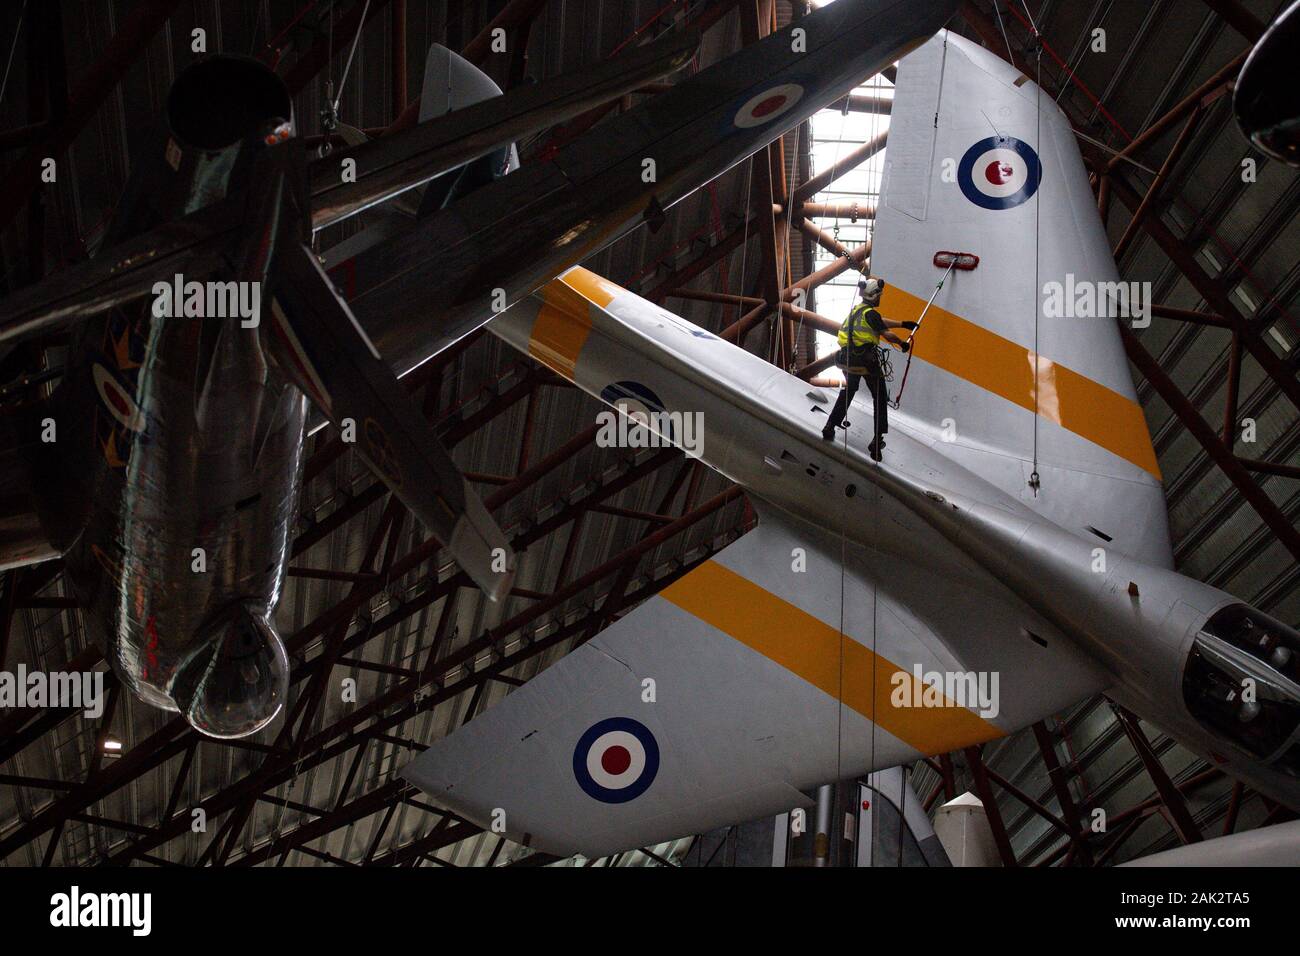 Los operadores especializados en el Royal Air Force Museum Cosford, cerca de Telford, Shropshire, limpiar los aviones Hawker Hunter suspendido mostrada en el Museo Nacional de la guerra fría, durante la exposición anual de alto nivel de limpieza y mantenimiento de aviones. Foto de stock